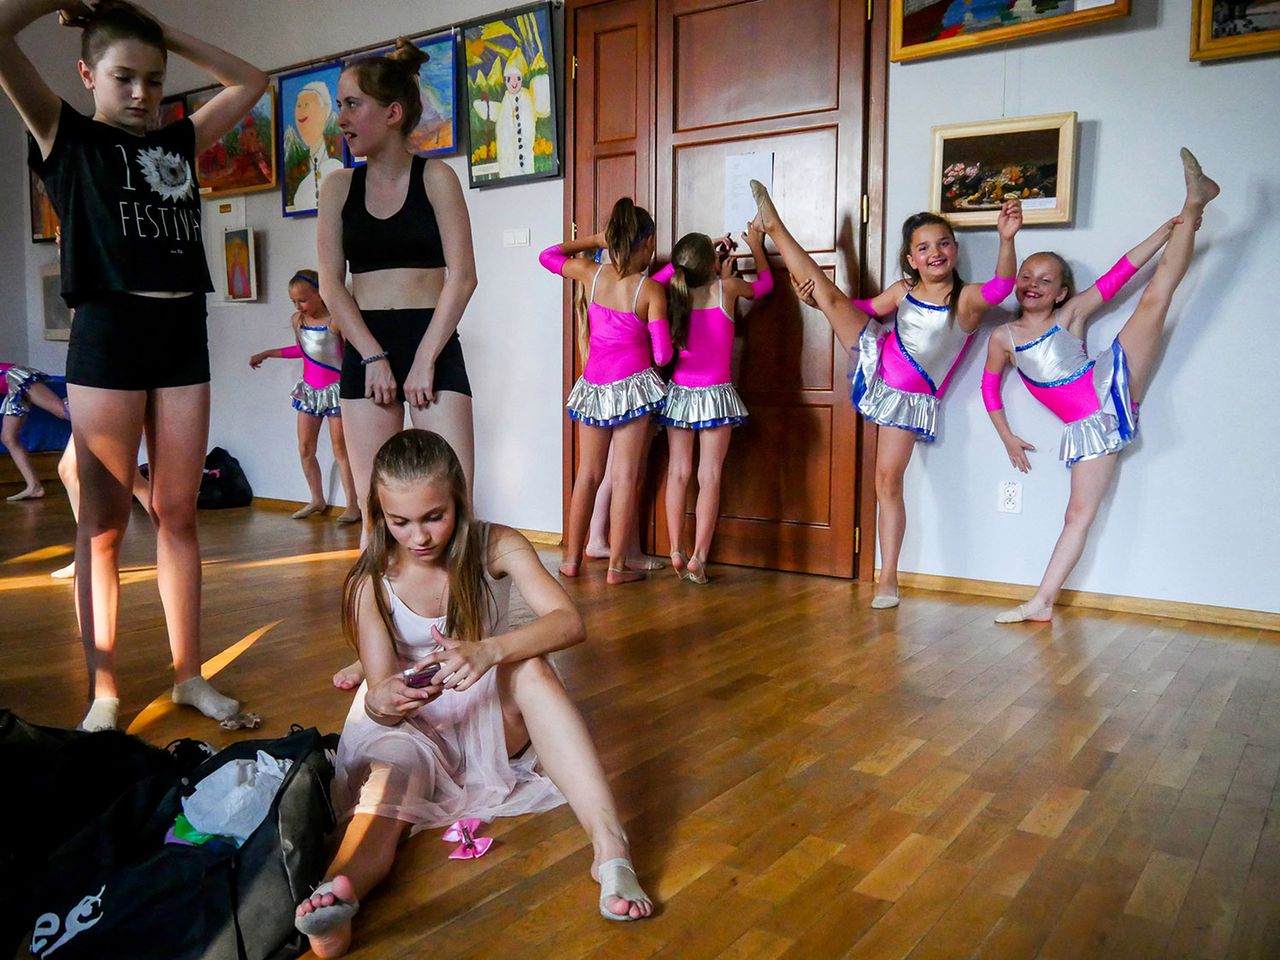 Paweł Jędrusik został wybrany finalistą kategorii otwartej Kultura. Jego zdjęcie „Taniec” zostało wykonane podczas gali Akademii Tańca Elite. Nie przedstawia ono jednak tego, co działo się na scenie, lecz kulisy. Dziewczynki ze zdjęcia przygotowują się do występu.